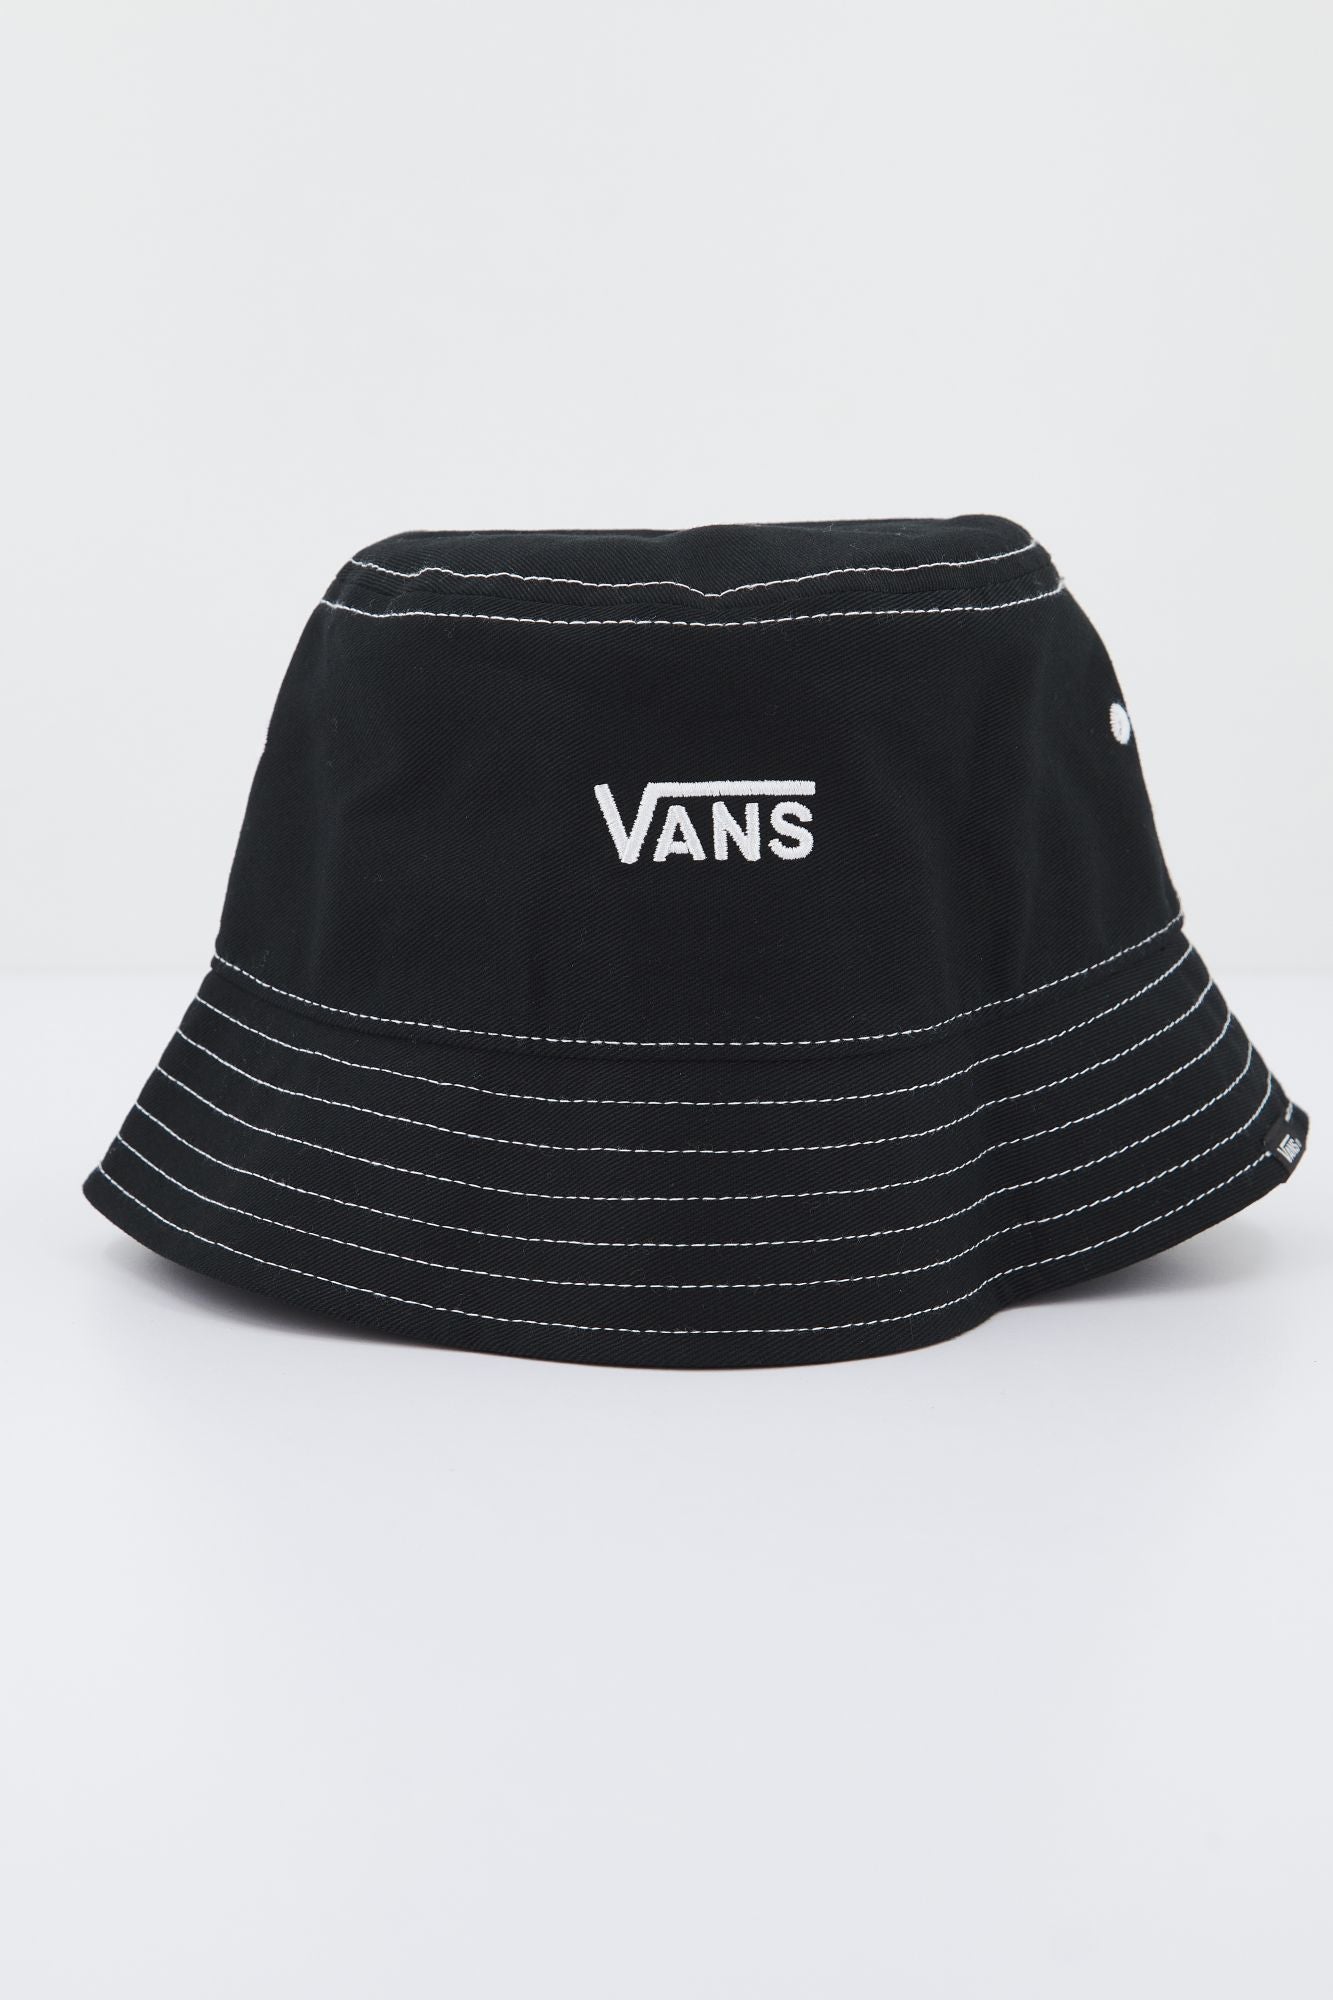 VANS HANKLEY BUCKET HAT en color NEGRO (1)